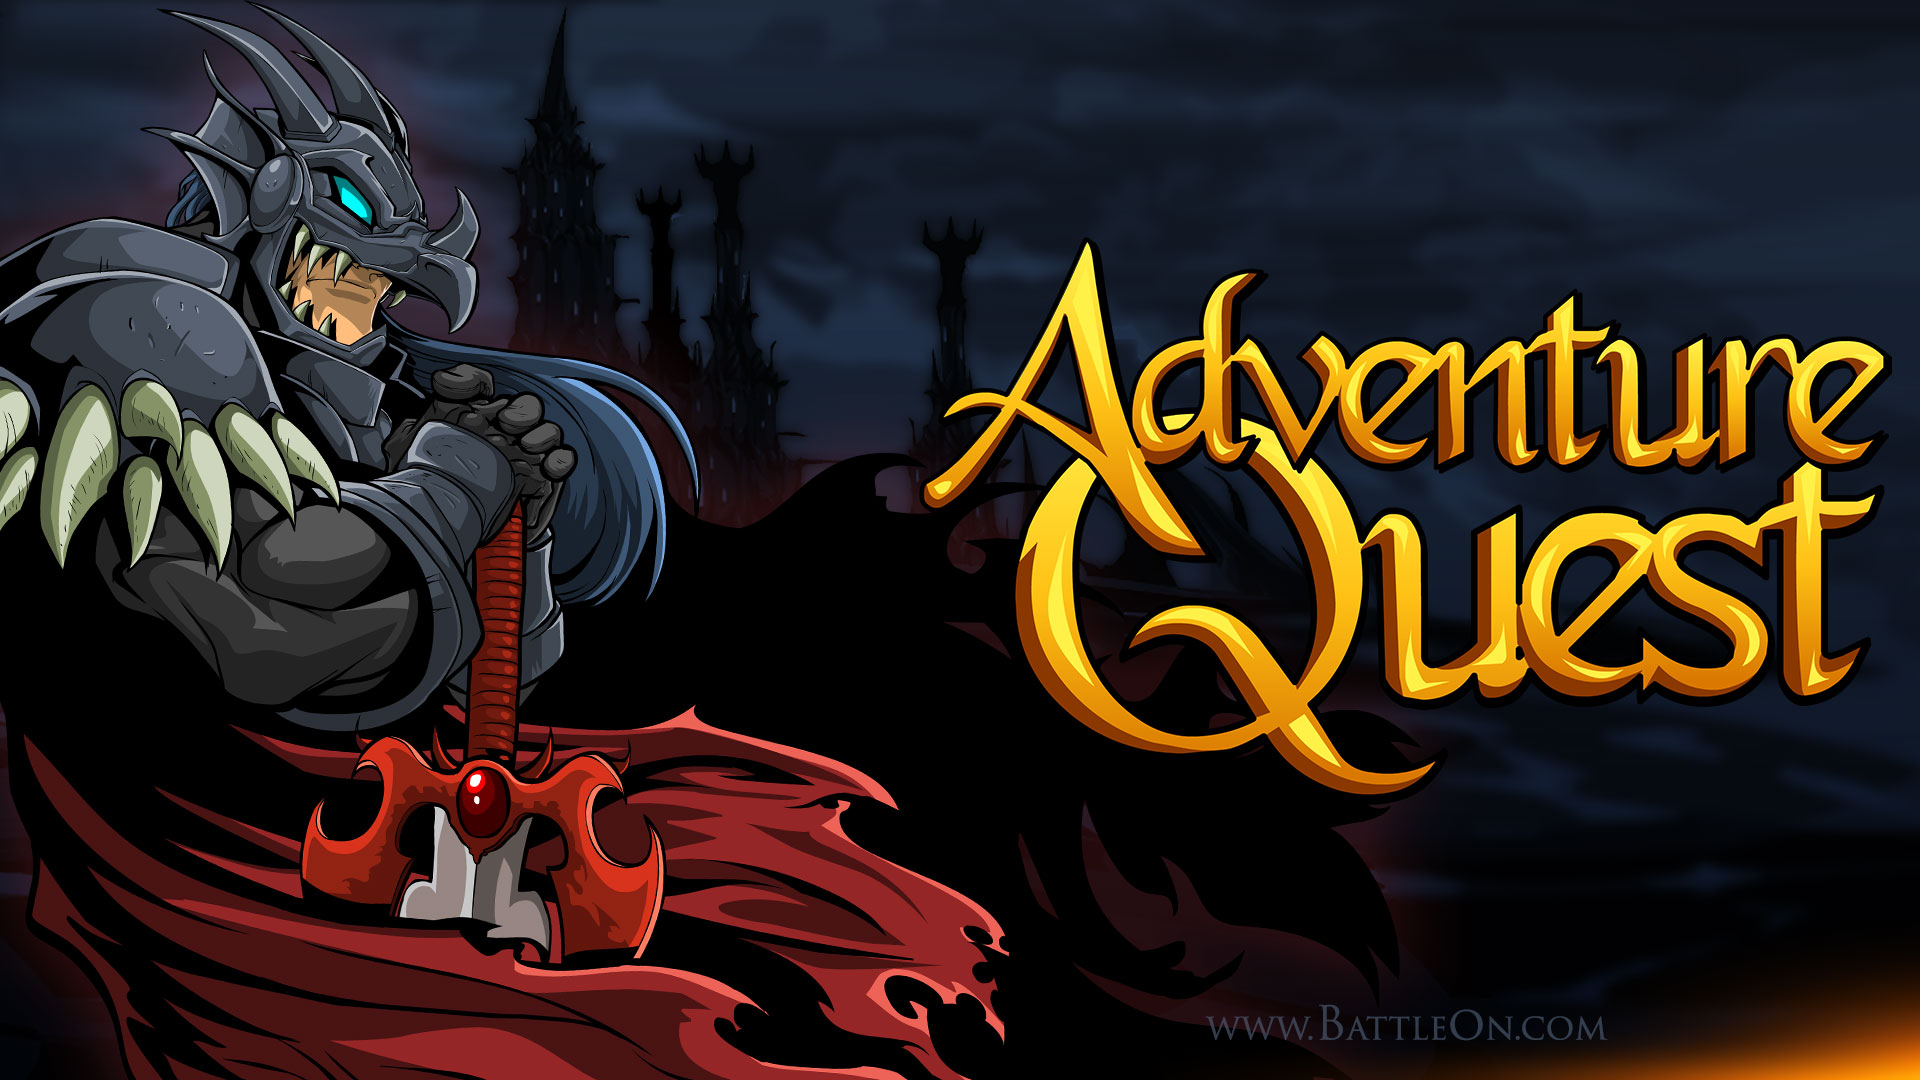 Meet the Legendary Guild That Broke the Game! - Adventure Quest 3D, Cross  Platform MMORPG